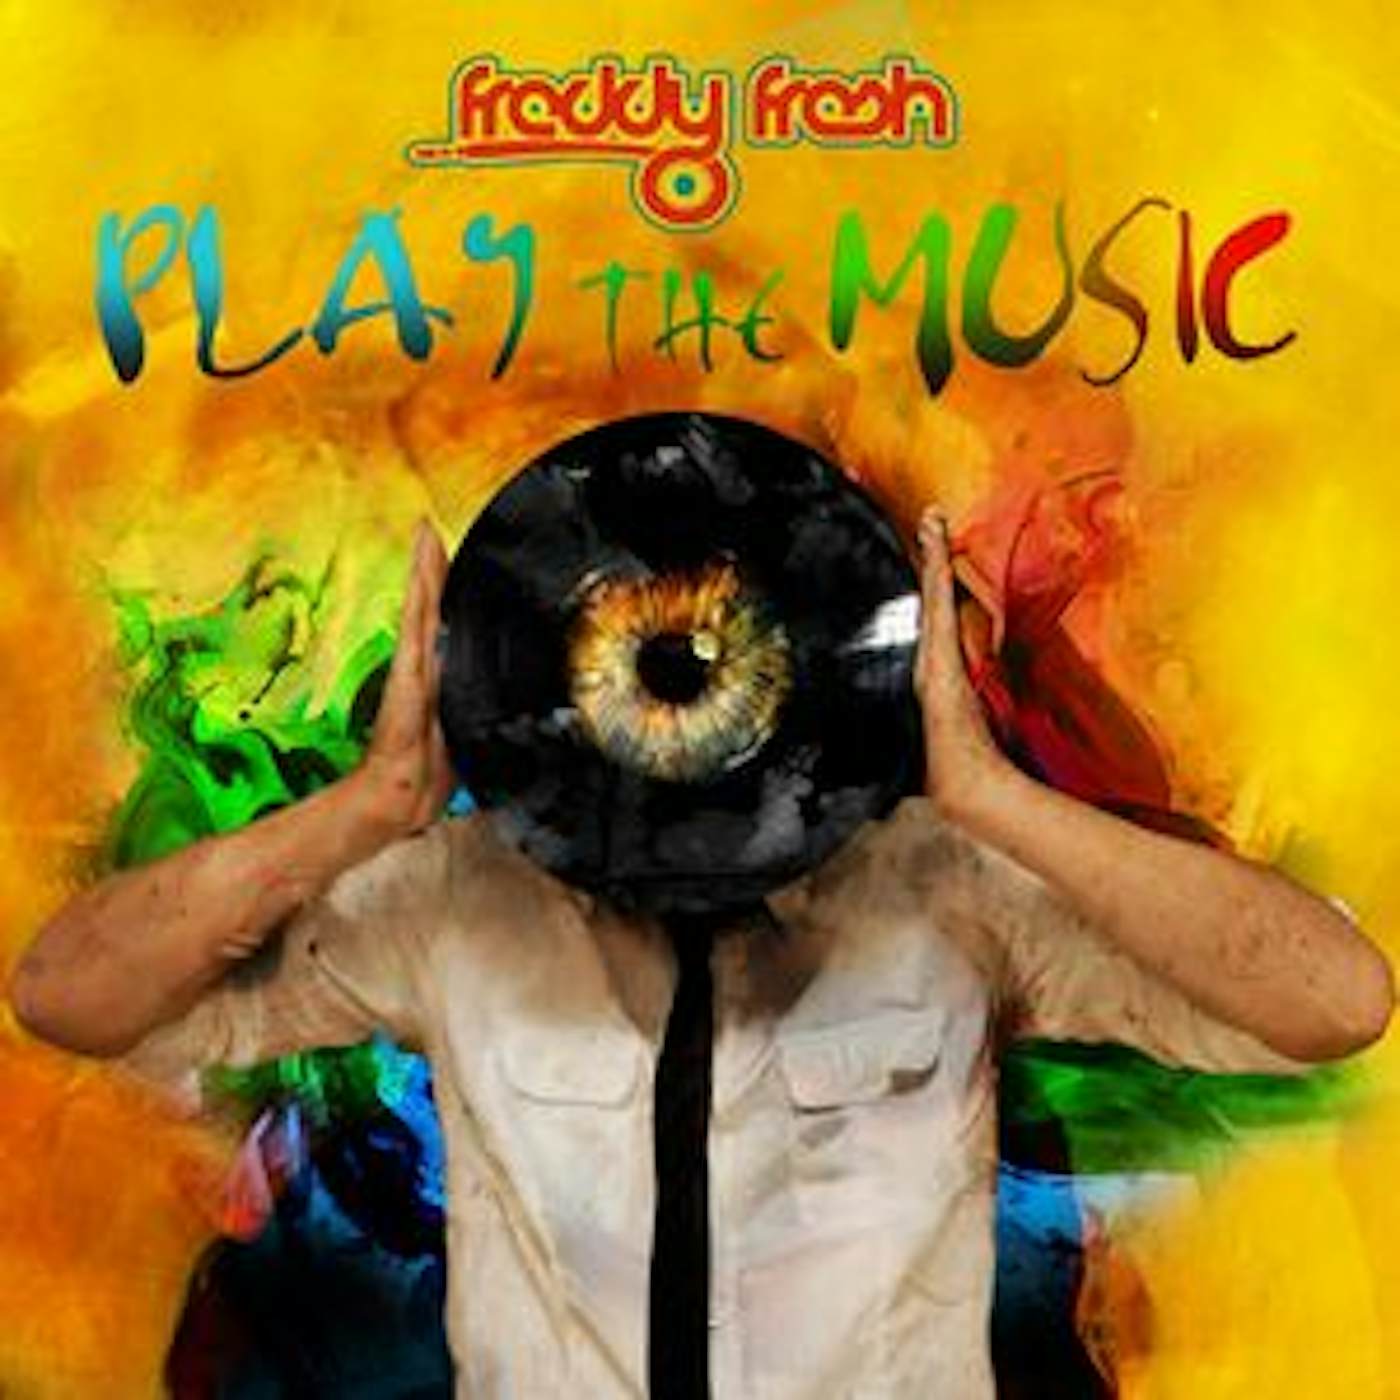 Freddy Fresh PLAY THE MUSIC CD